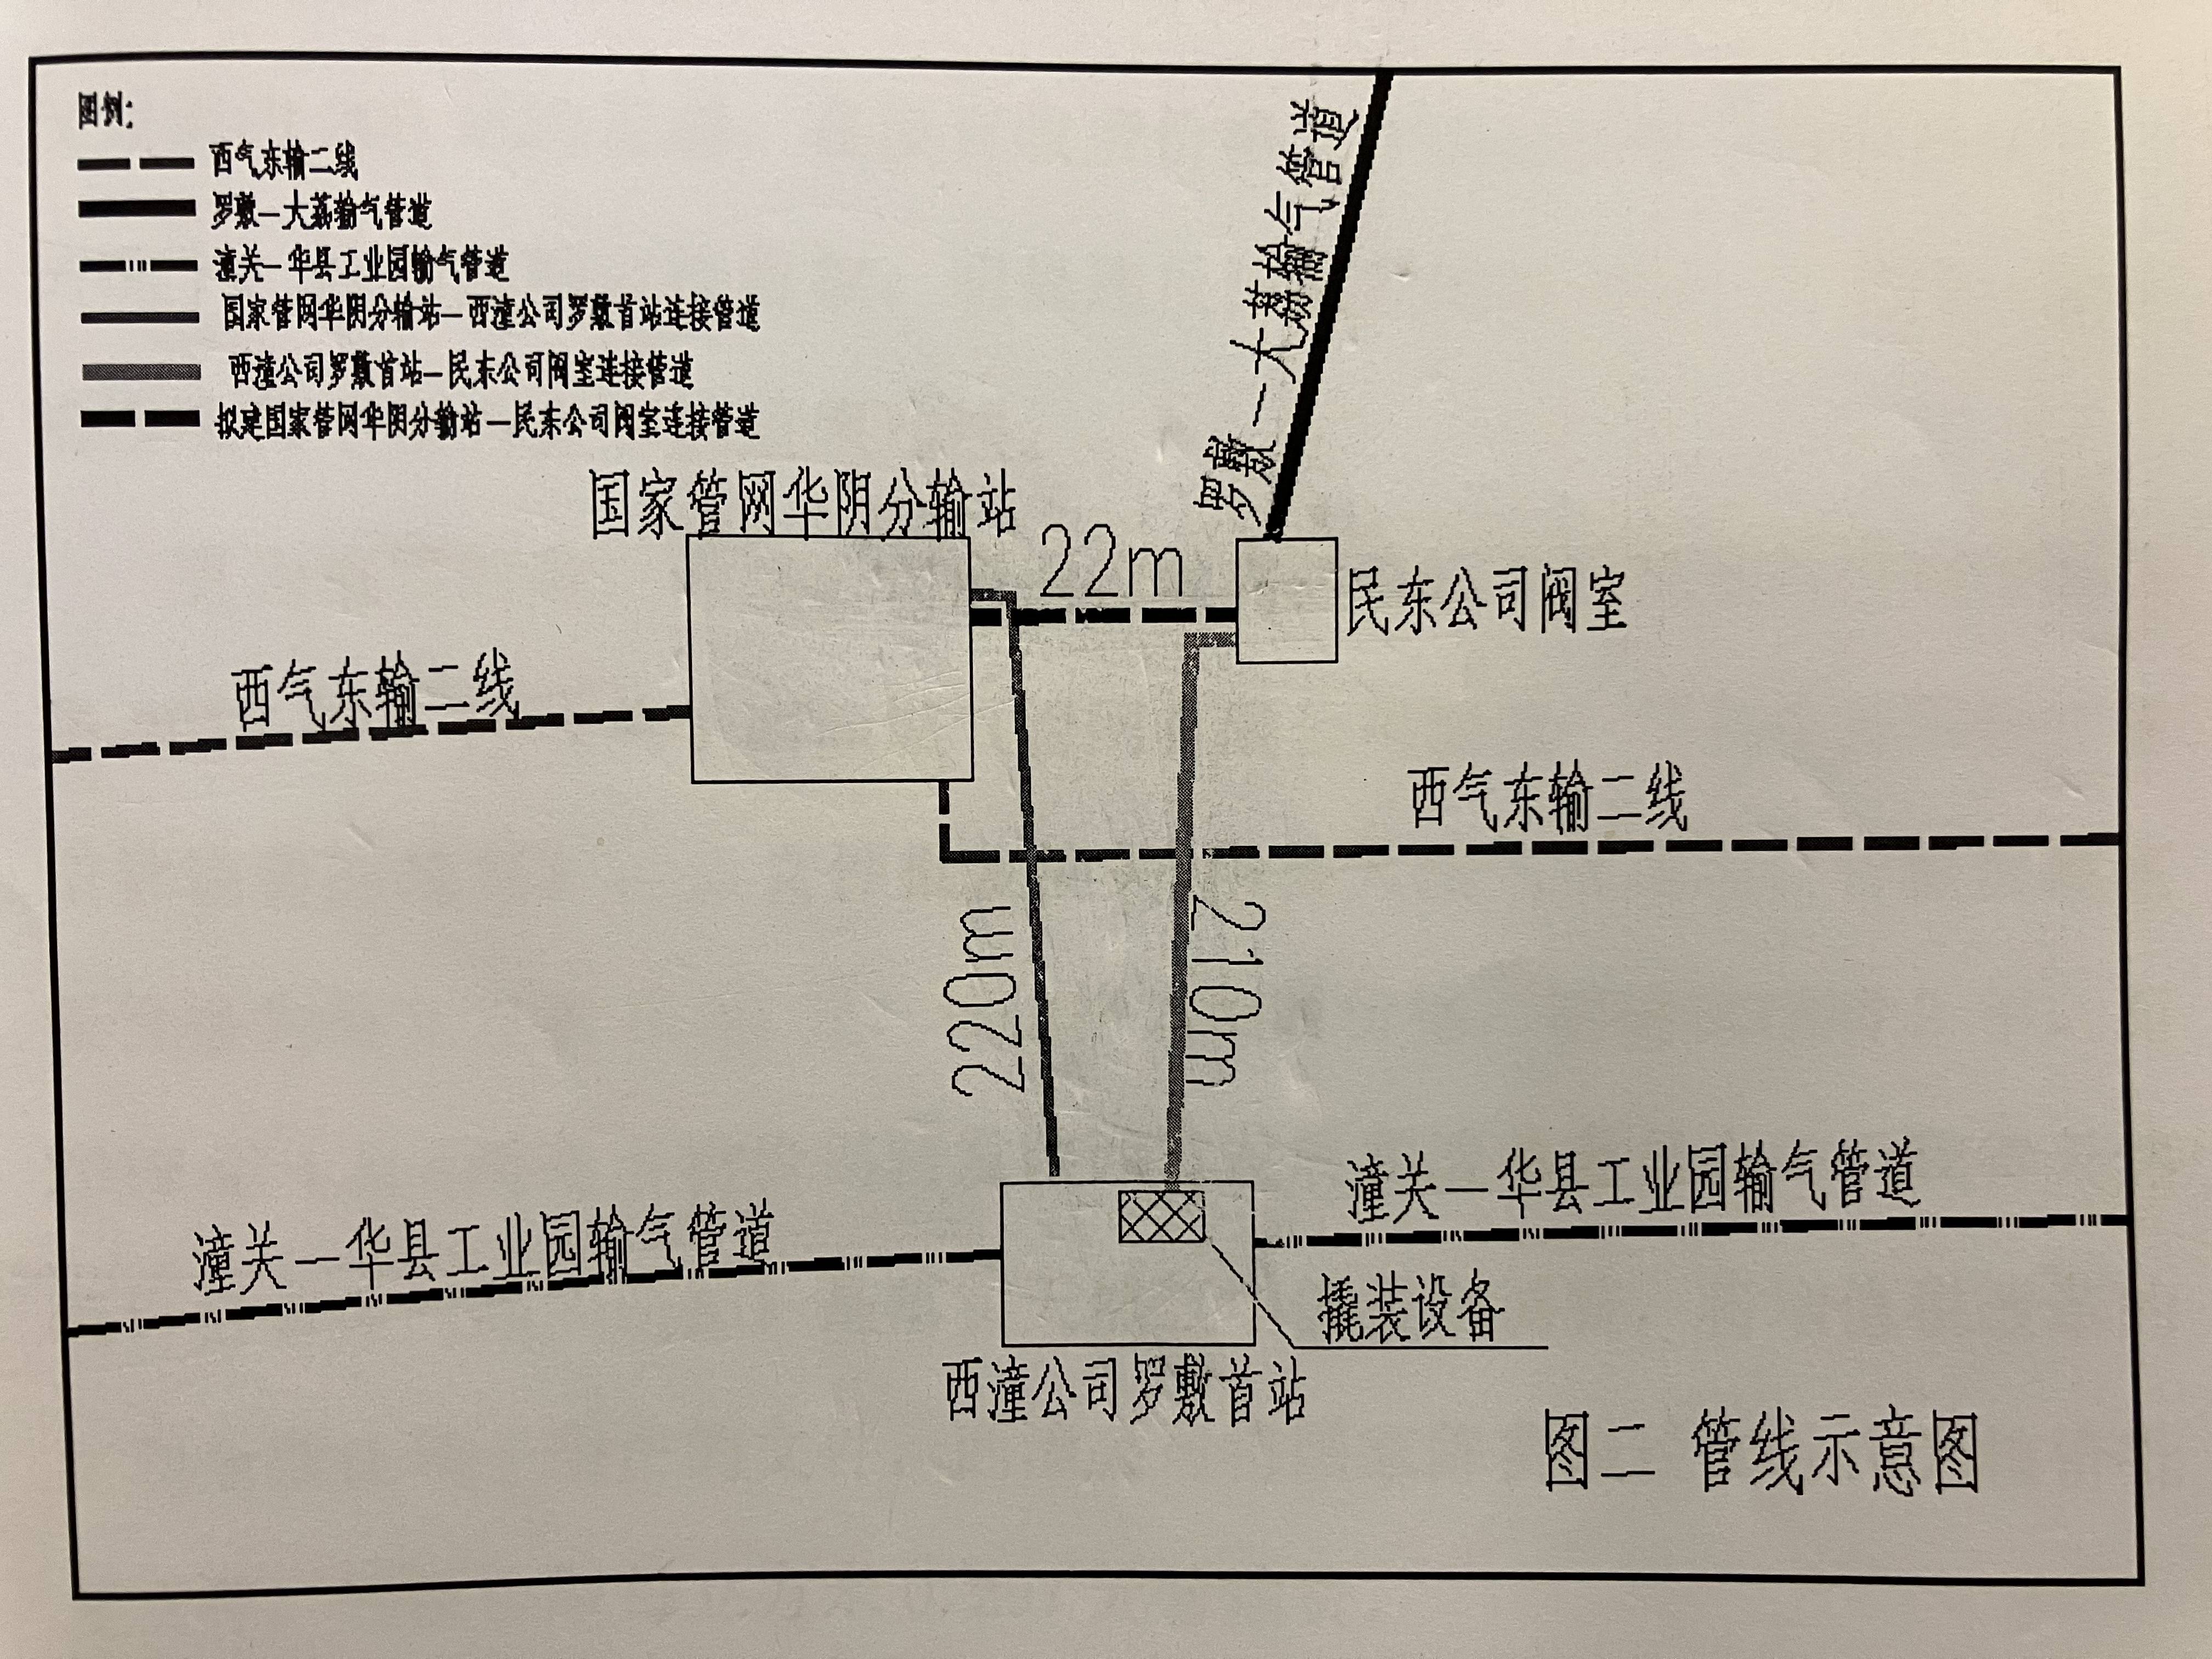 民东公司与西潼公司首站均位于96号分输站旁。